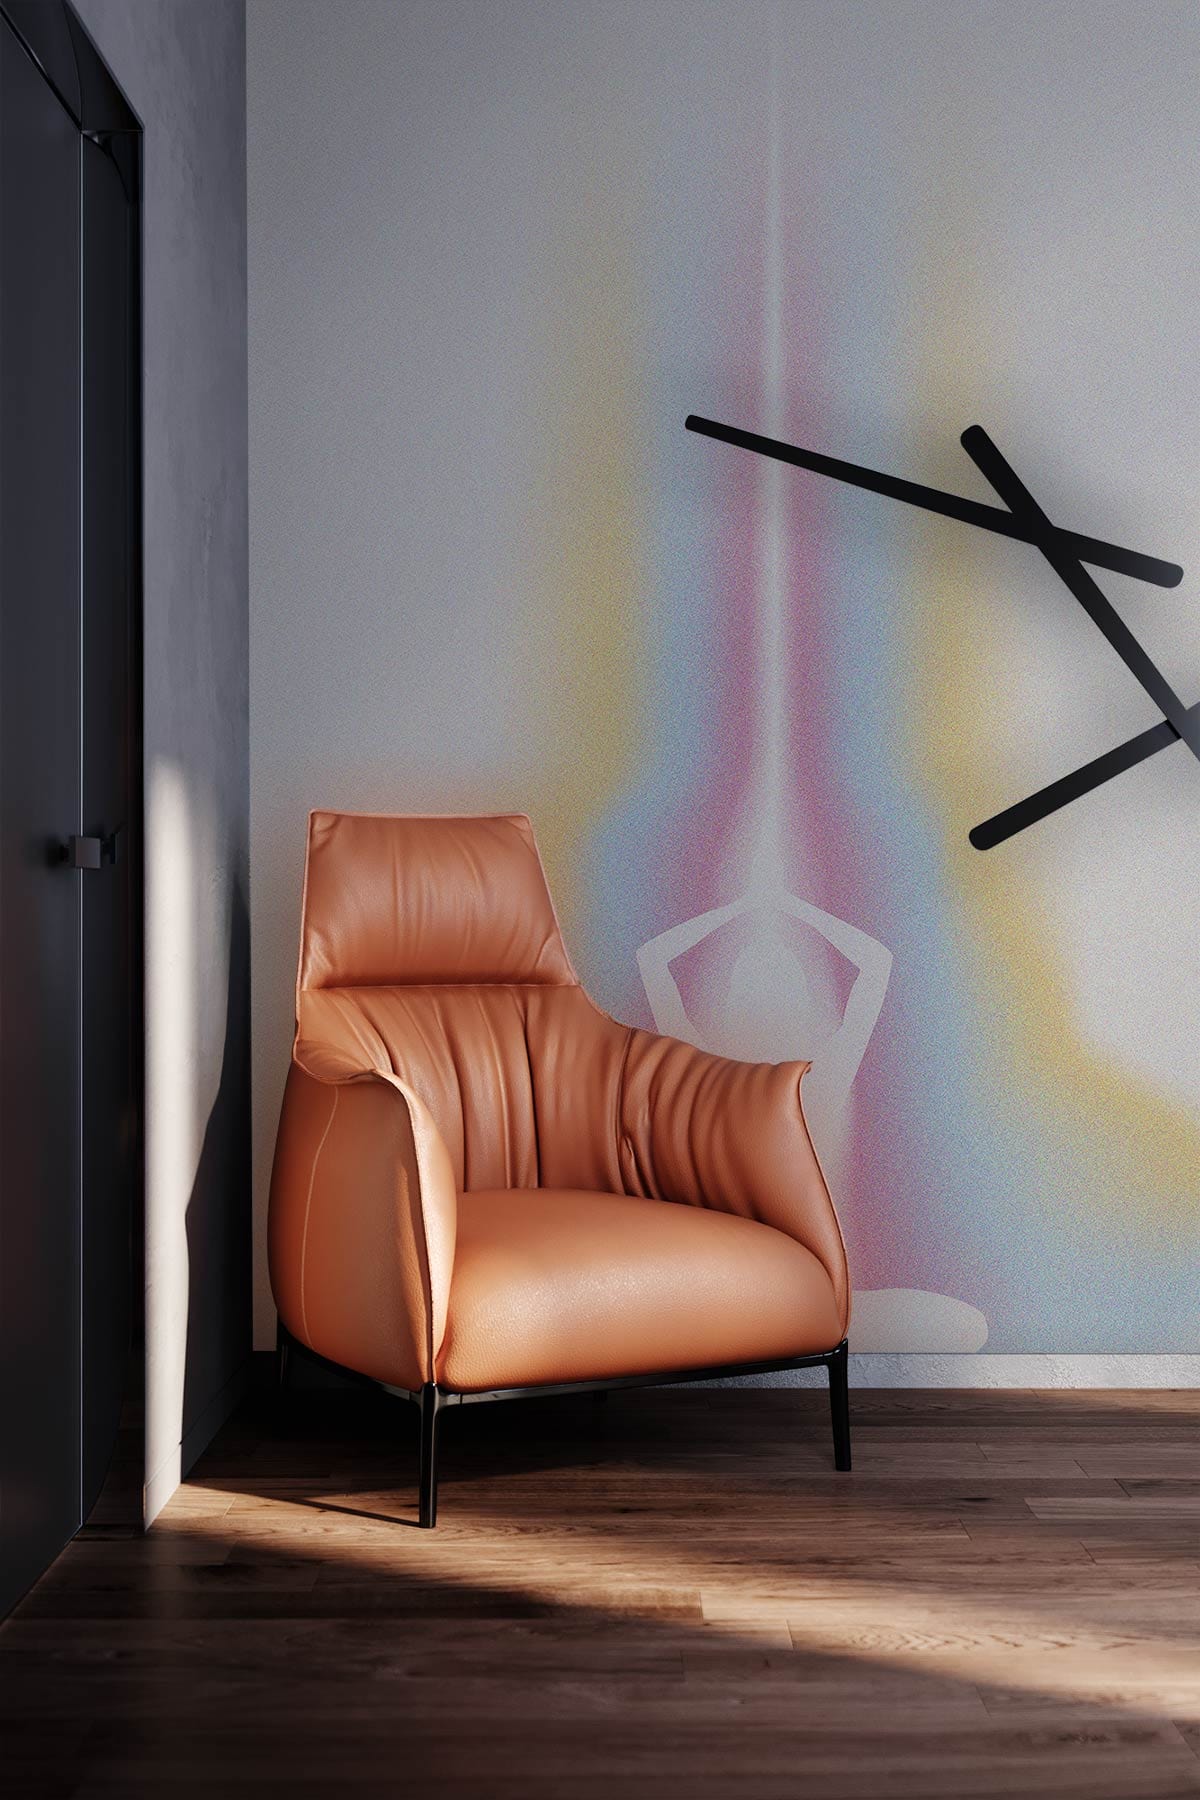 Light of girl Pattern Wallpaper mural for living Room decor